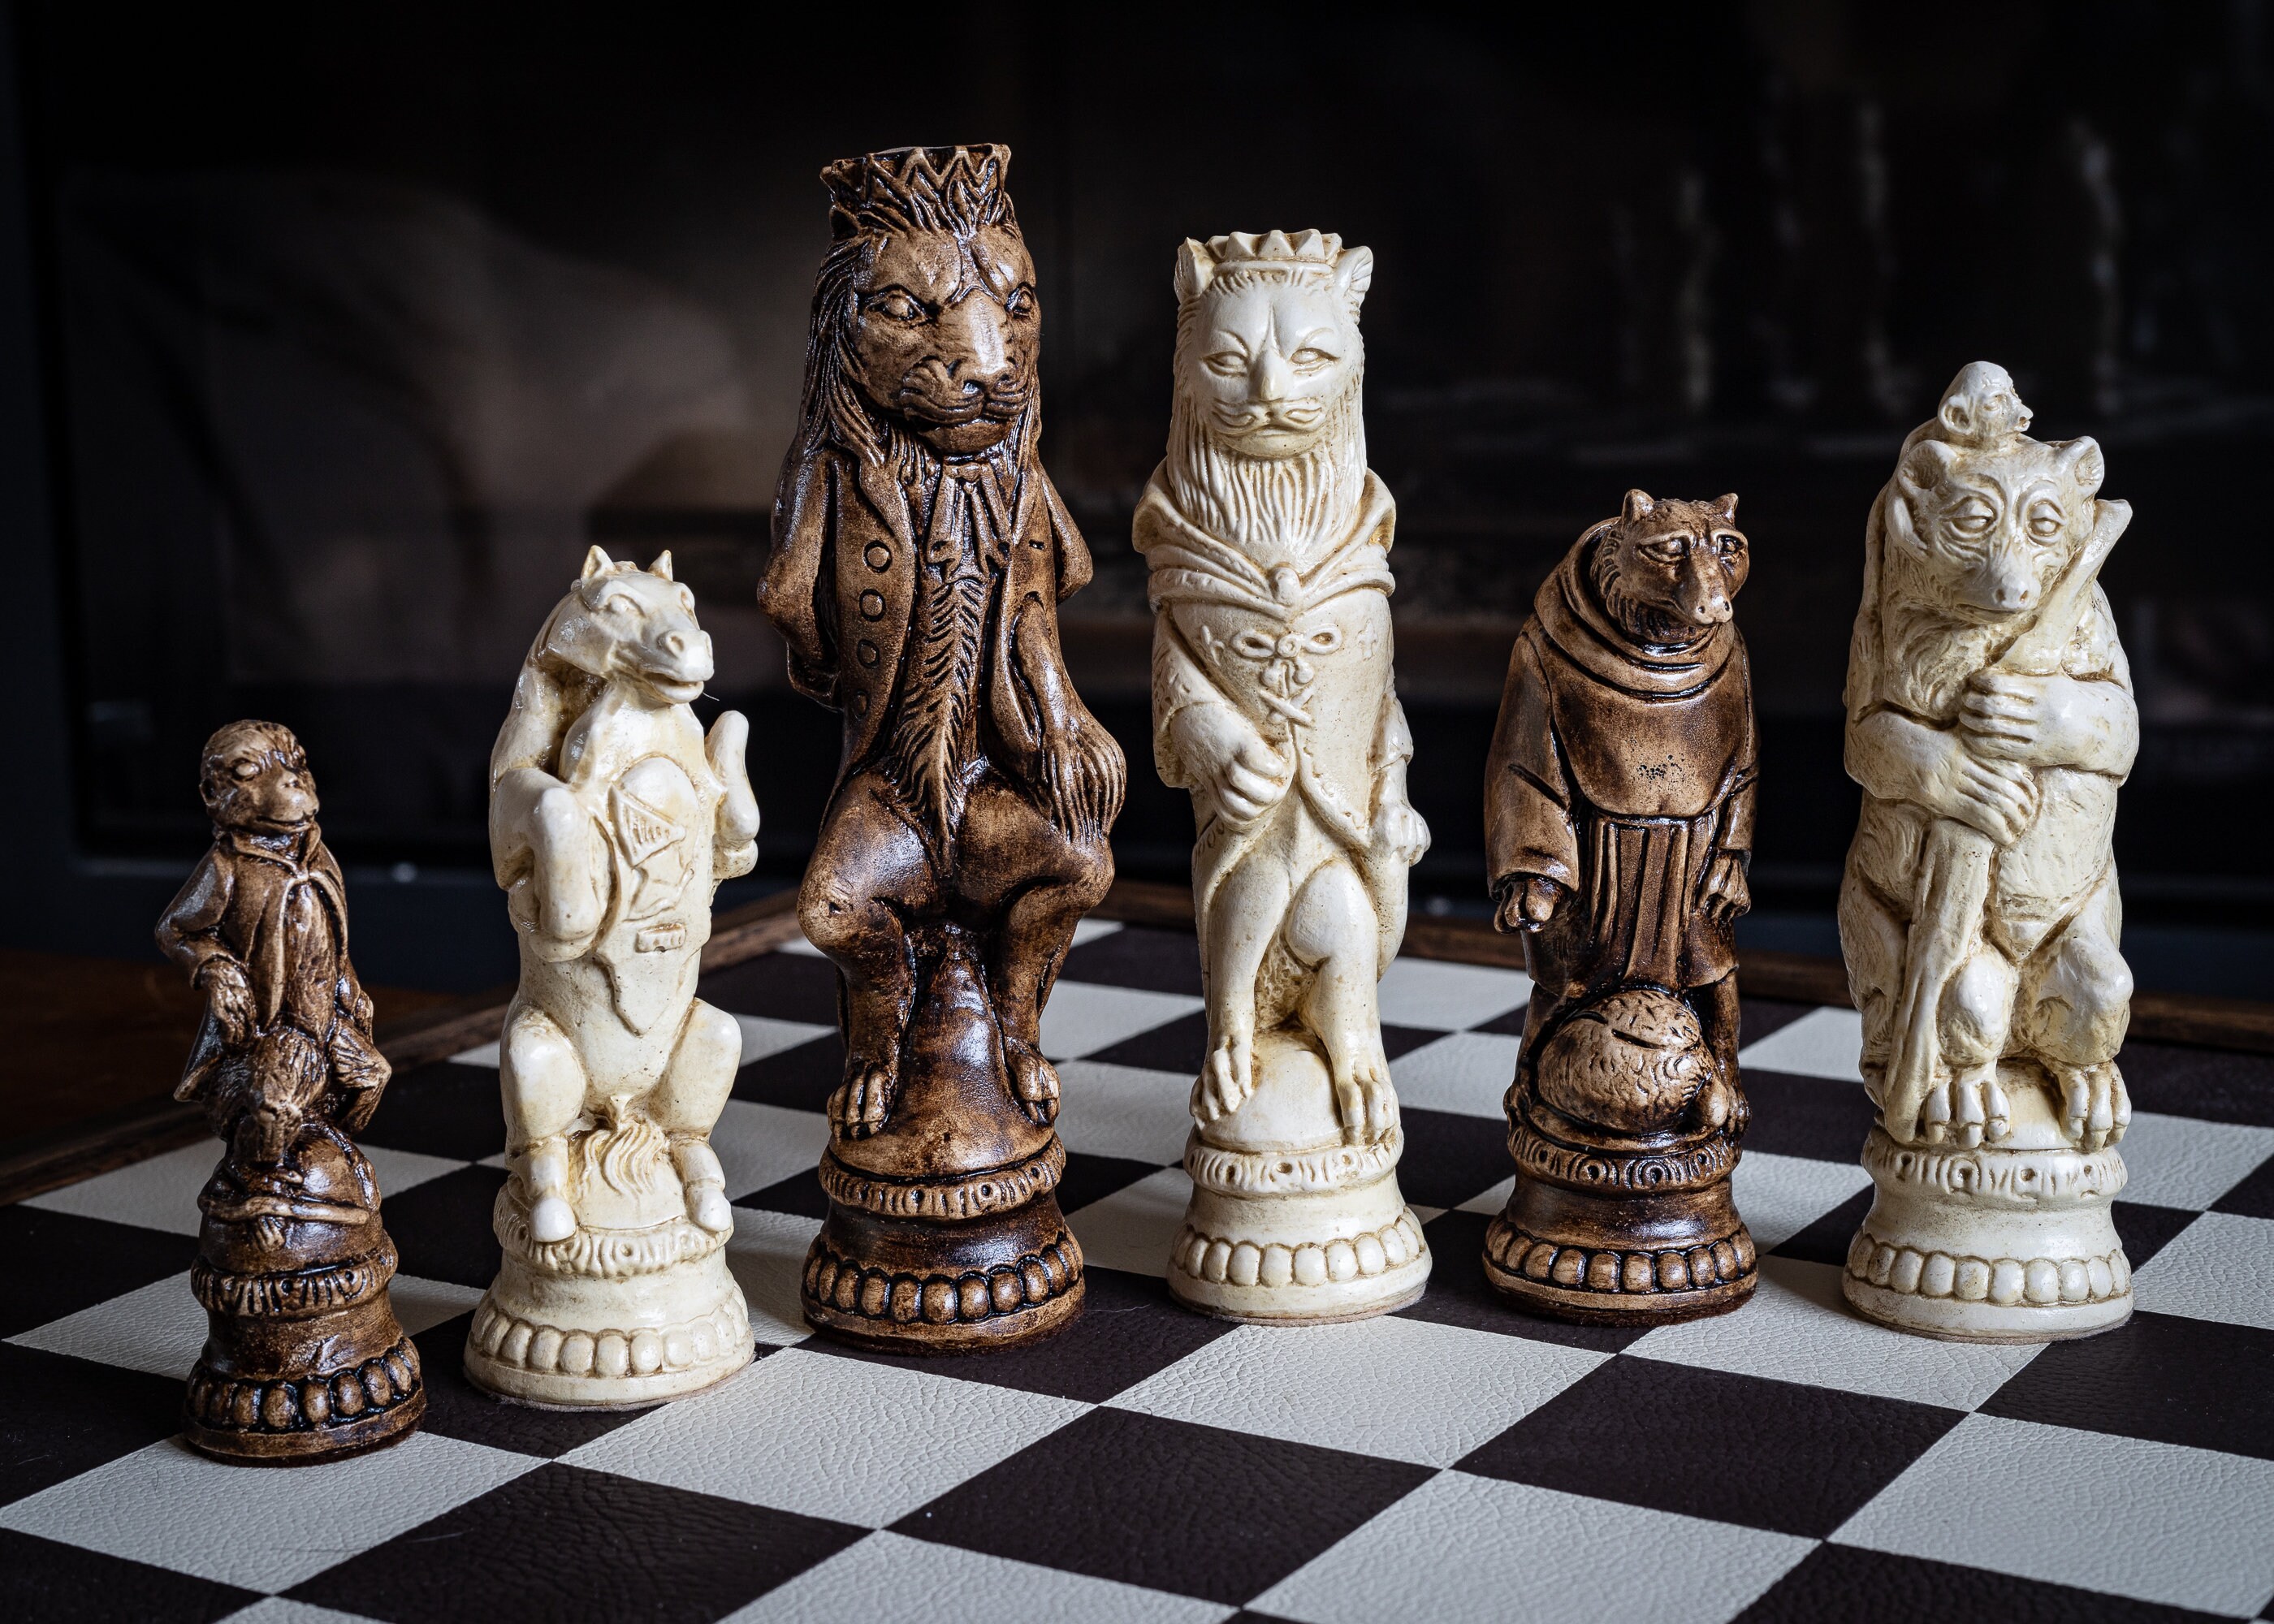 Rook Cast Chess Puzzle - Detroit Institute of Arts Museum Shop